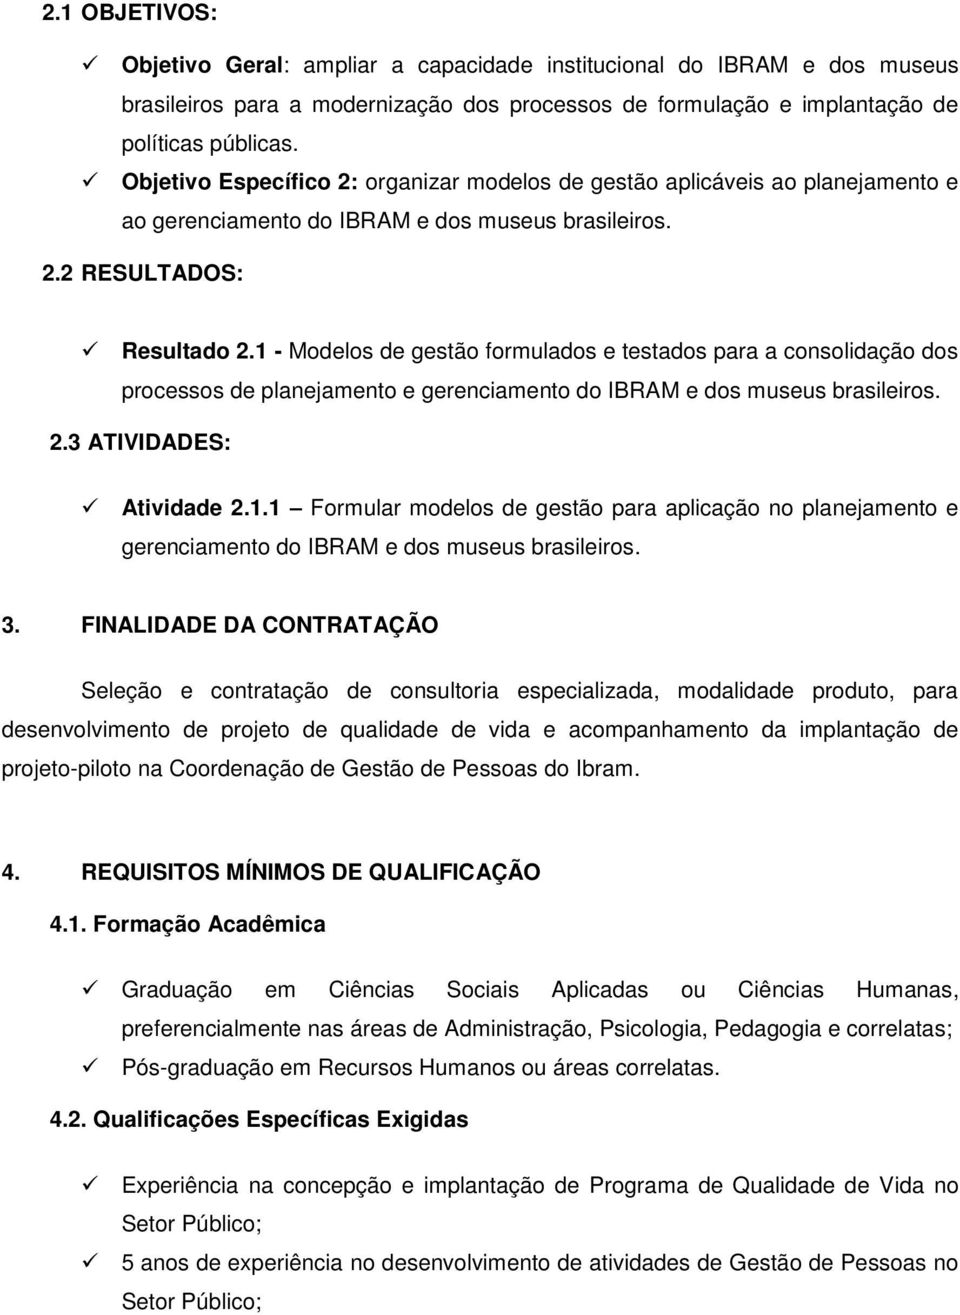 1 - Modelos de gestão formulados e testados para a consolidação dos processos de planejamento e gerenciamento do IBRAM e dos museus brasileiros. 2.3 ATIVIDADES: Atividade 2.1.1 Formular modelos de gestão para aplicação no planejamento e gerenciamento do IBRAM e dos museus brasileiros.